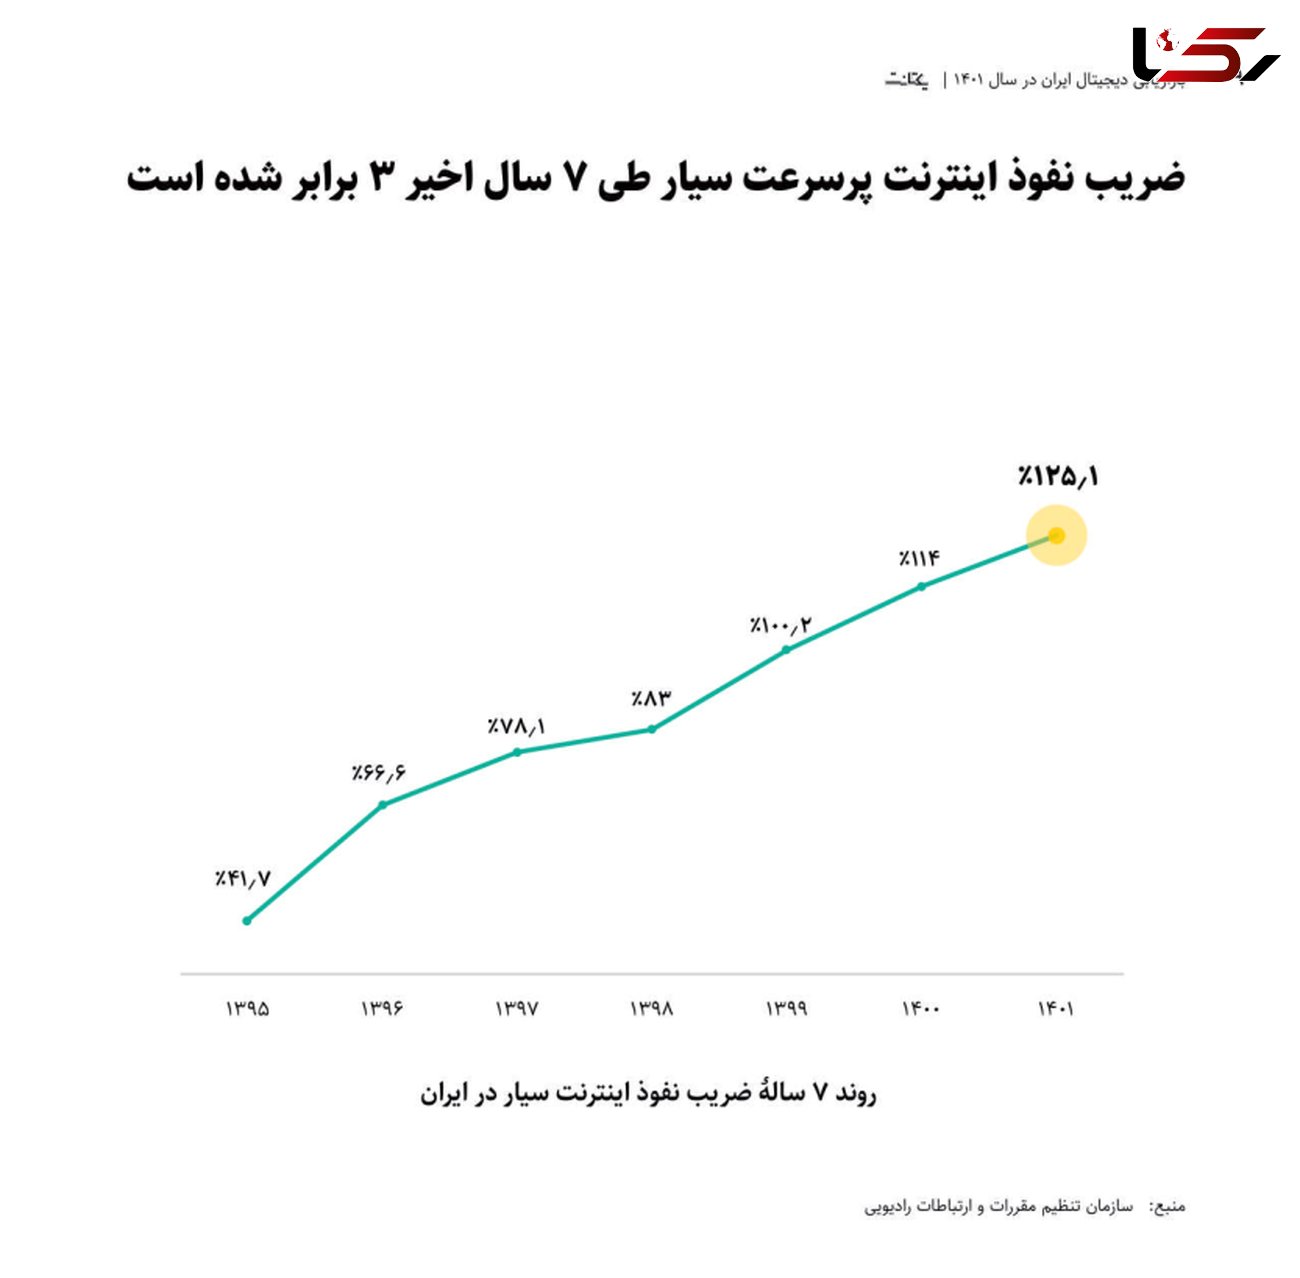 ضریب نفوذ اینترنت پرسرعت سیار ایران ۳ برابر شد / سرعت پیشرفت ایران بیشتر از اروپا